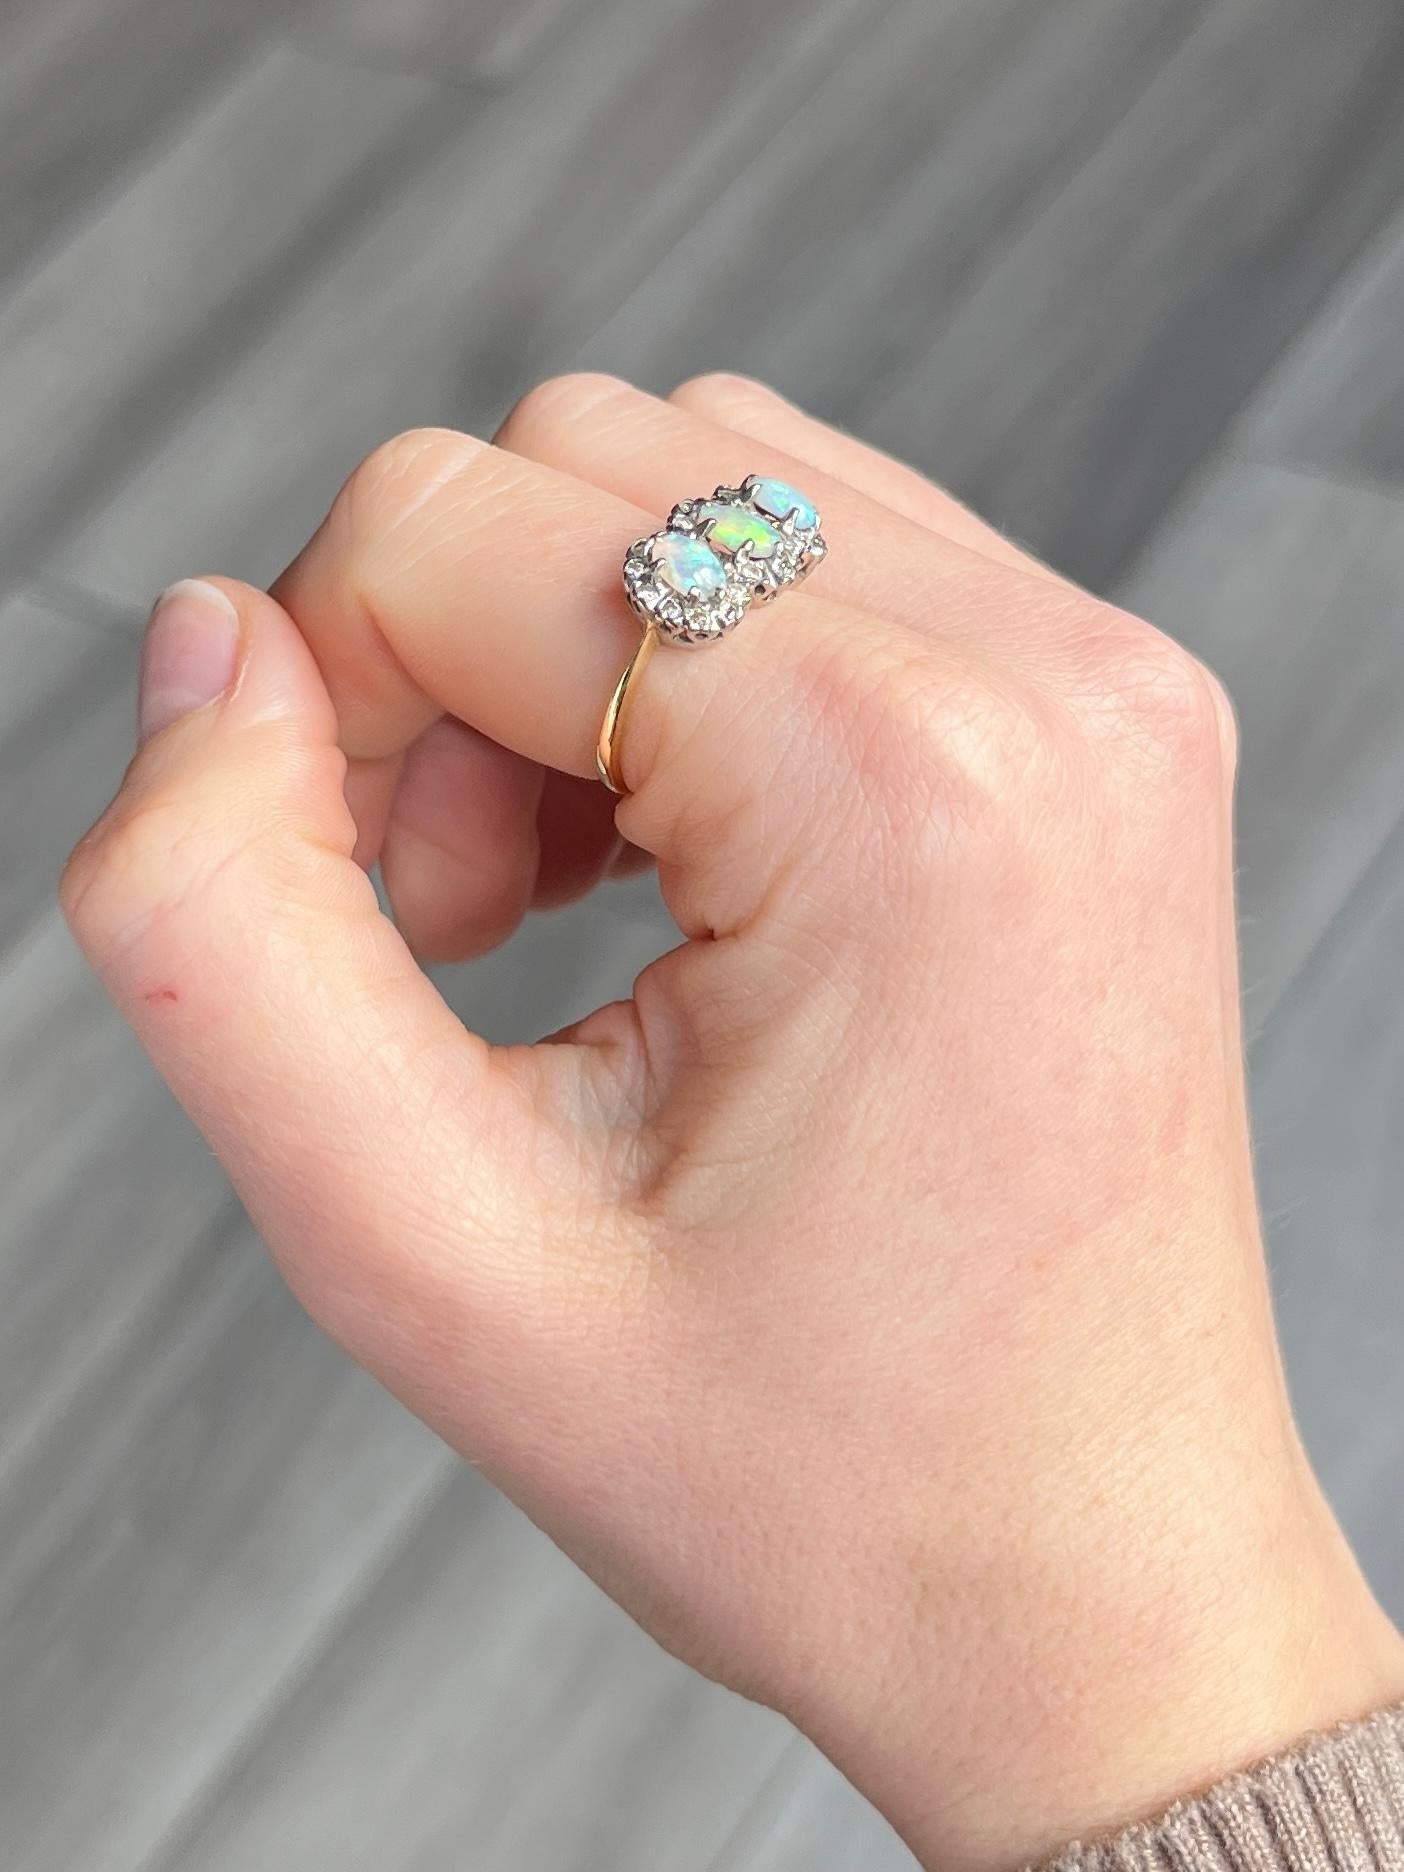 Dieser atemberaubende Dreifach-Cluster enthält drei bunte Opale, die von Diamanten umgeben sind. Die Gesamtzahl der Diamanten beträgt ca. 52 Punkte. Jeder Opal misst 35pts. Das Modell ist aus 18 Karat Gold und die Steine sind in Platin gefasst.